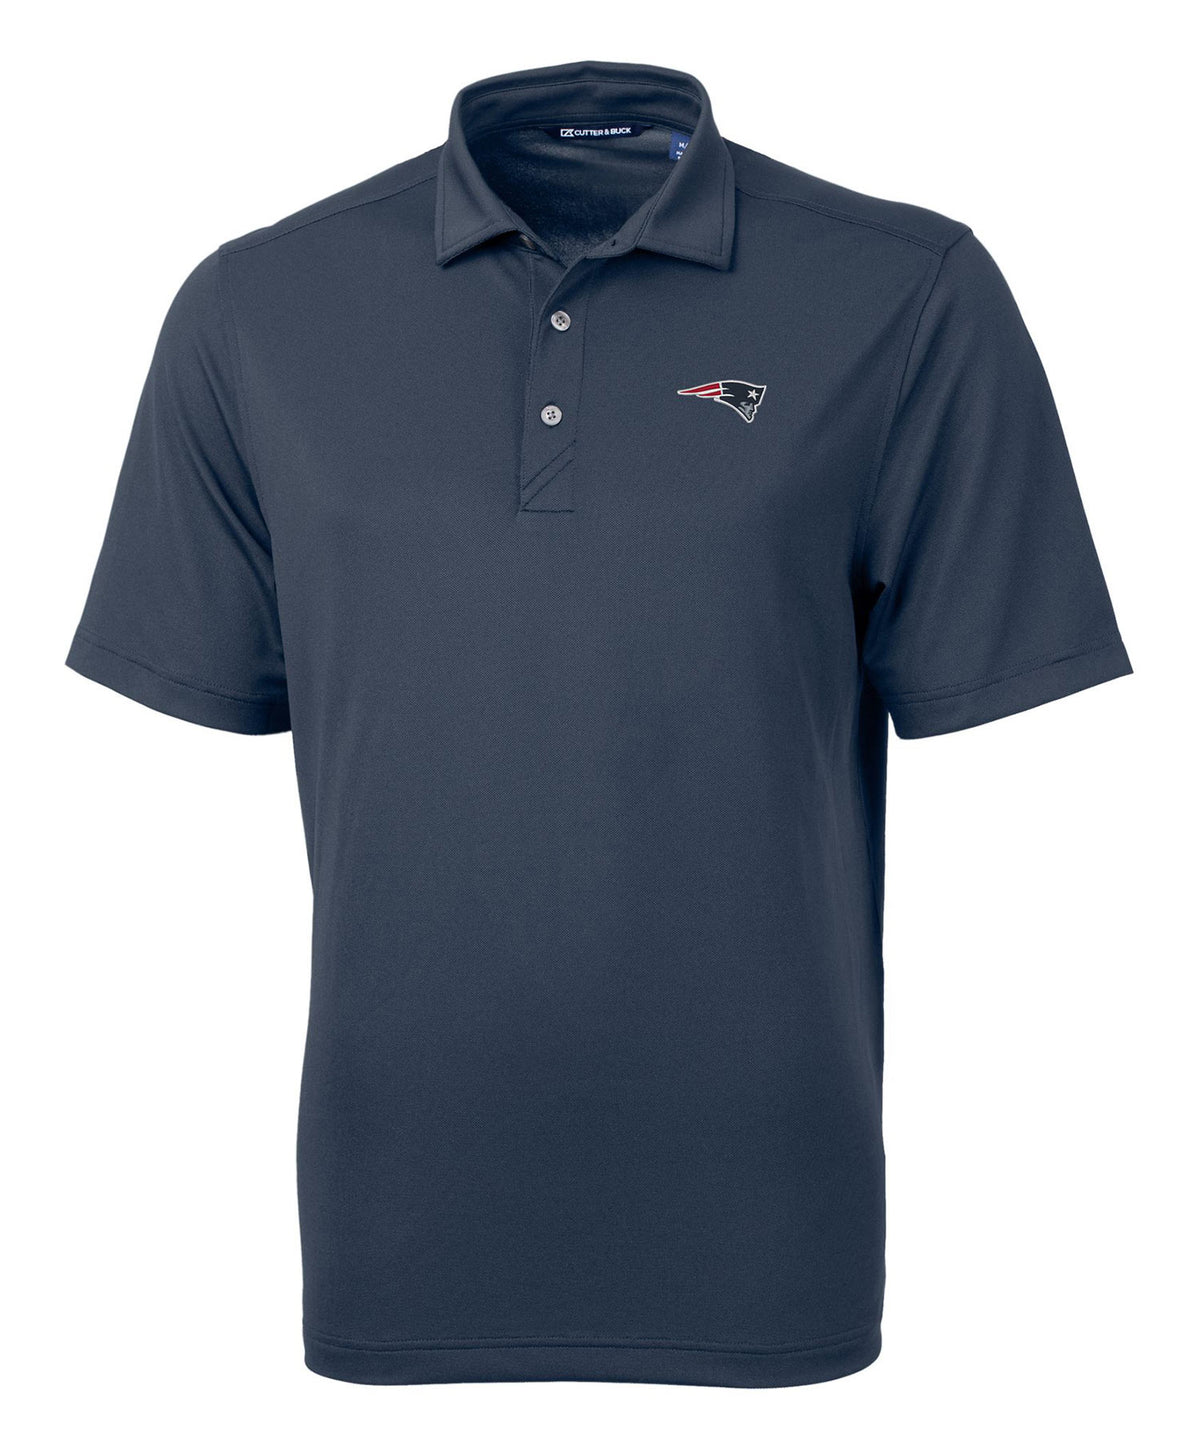 Cutter & Buck New England Patriots Short Sleeve Polo Knit Shirt, Men's Big & Tall